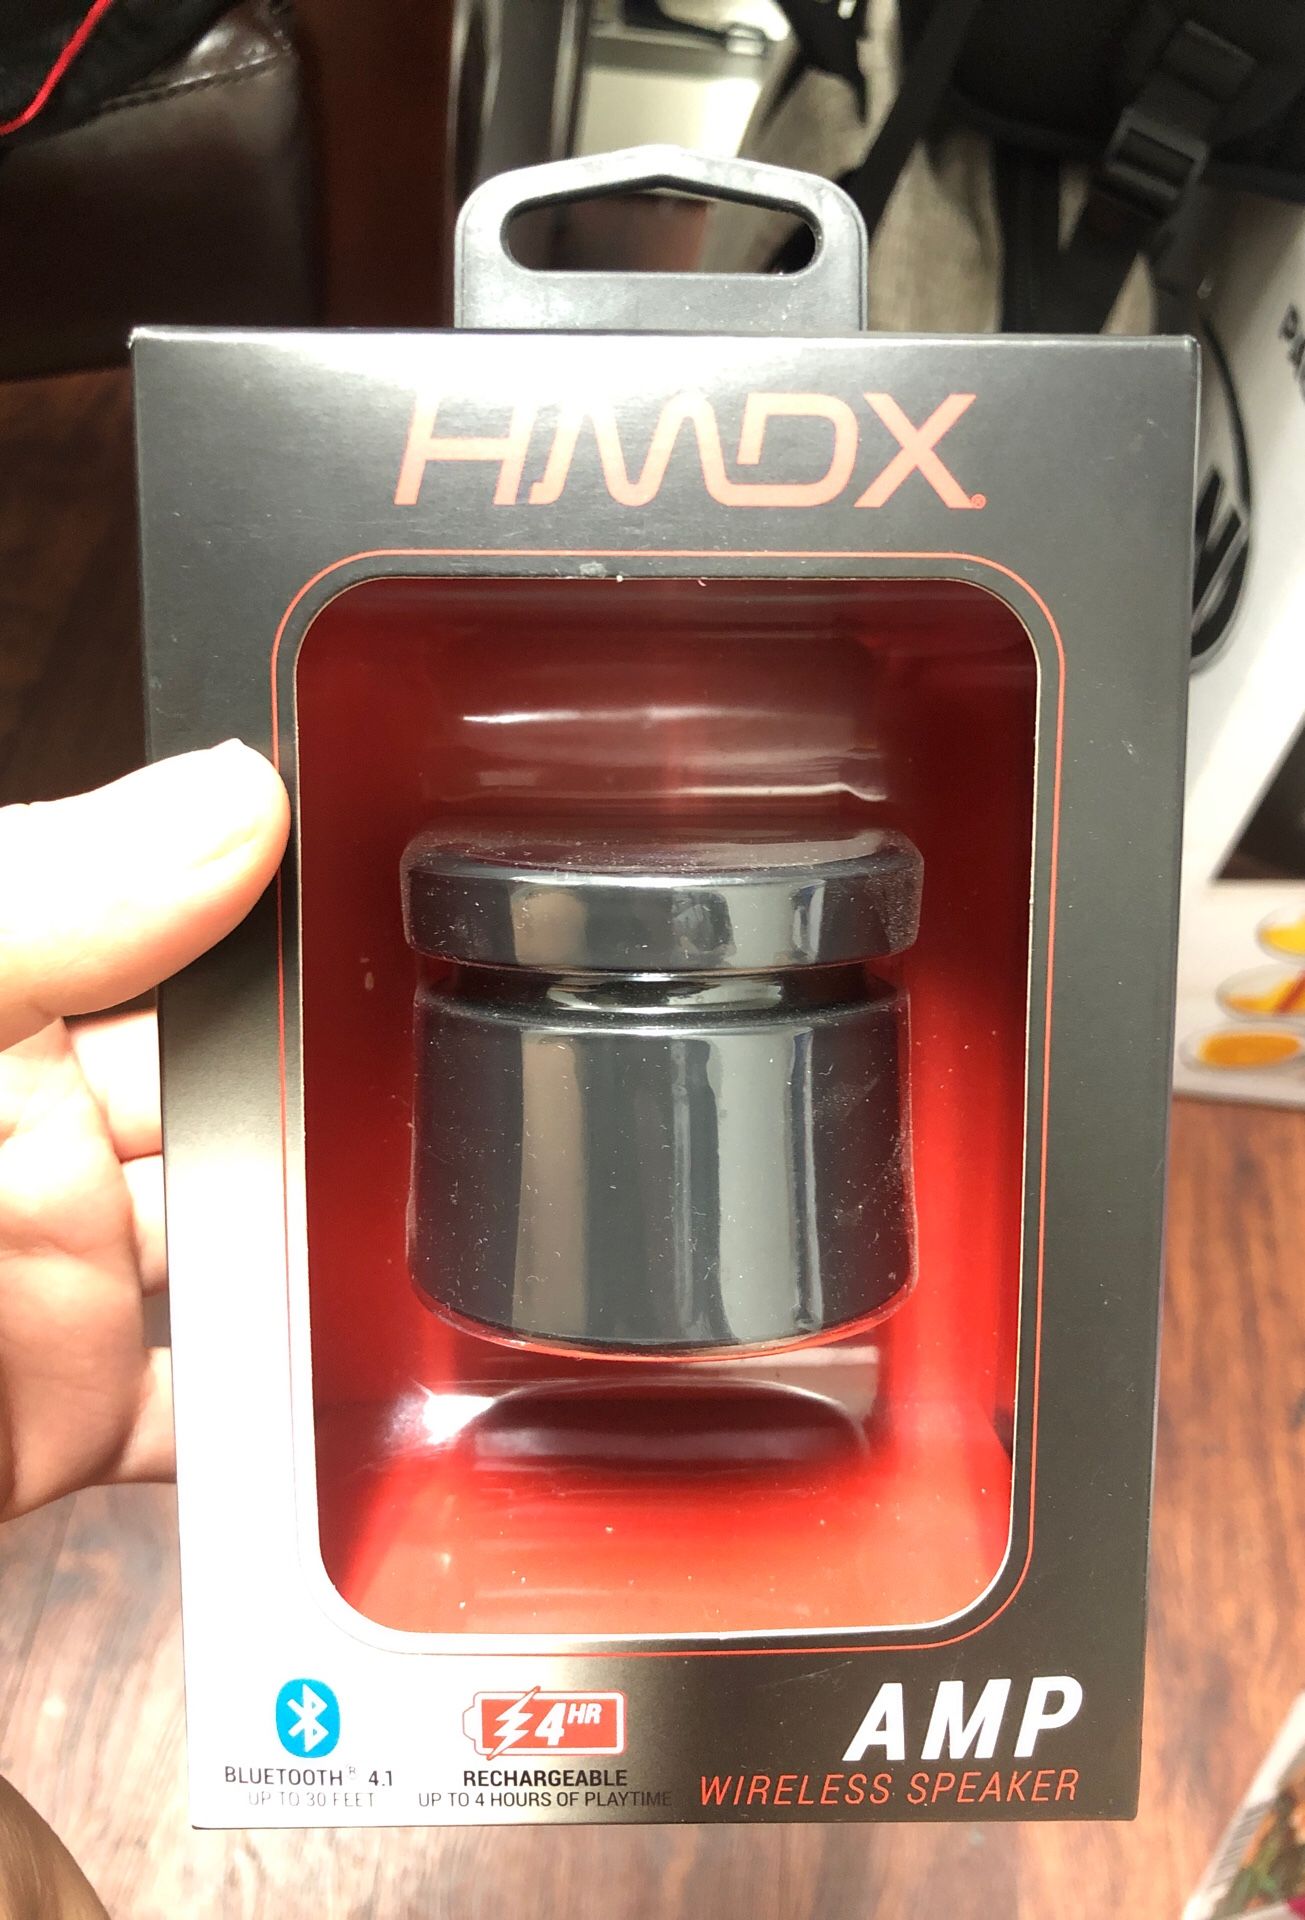 Hmdx Bluetooth speaker